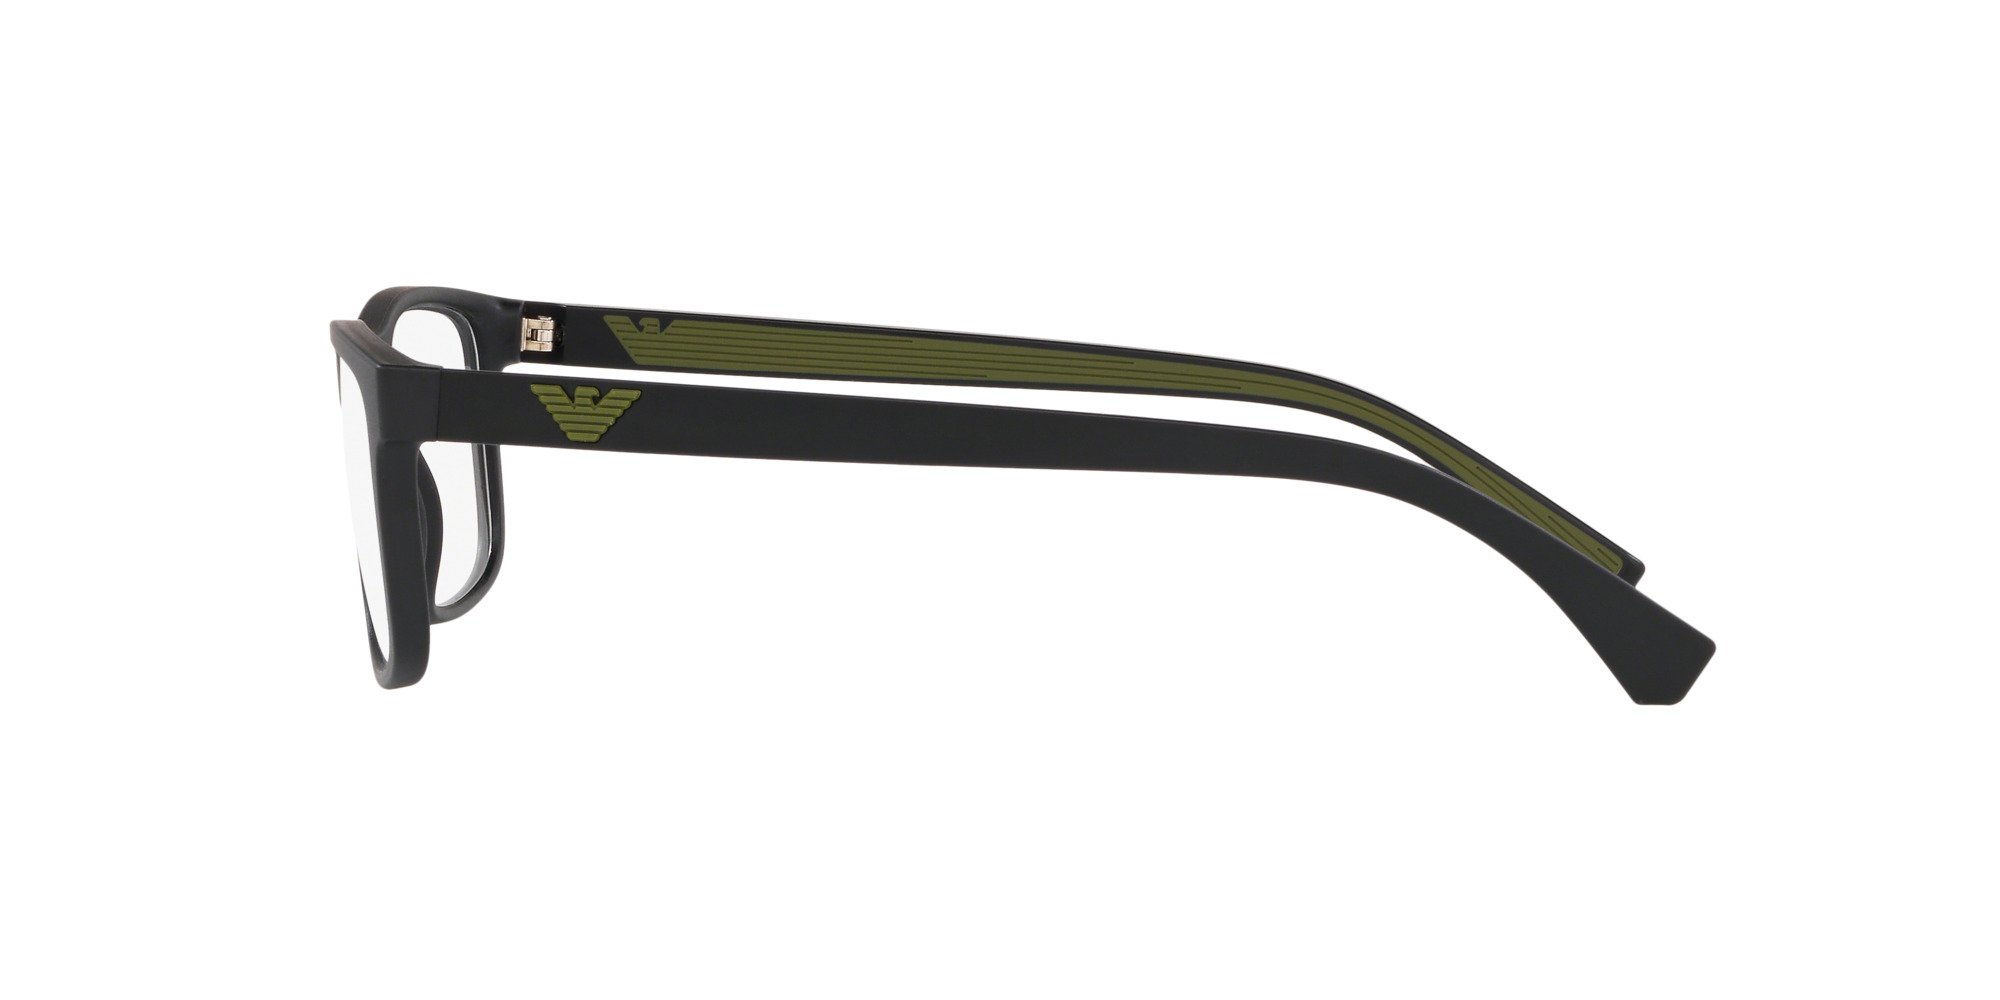 Das Bild zeigt die Korrektionsbrille EA3147 5042 von der Marke Emporio Armani in Schwarz.